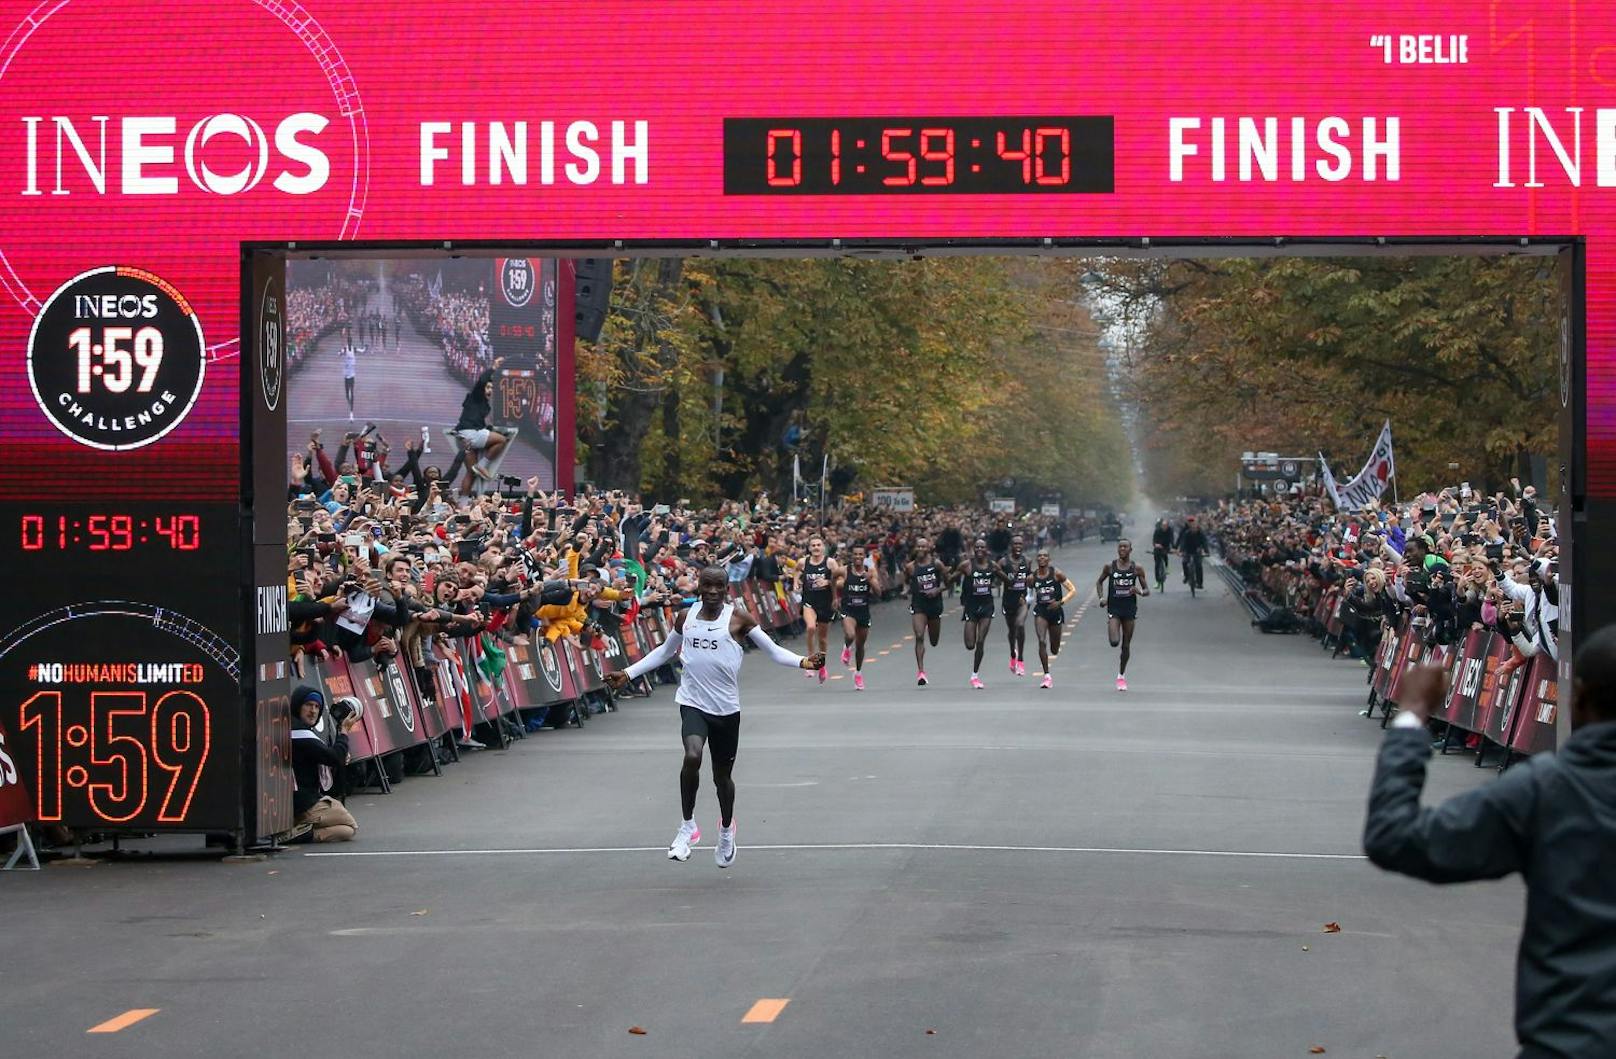 Eliud Kipchoge lief vor zwei Jahren in Wien als erster Mensch einen Marathon in unter zwei Stunden – bei der INEOS-Challenge. In Tokio will der 36-jährige Ausdauersportler aus Kenia sein Olympia-Gold von Rio wiederholen. 